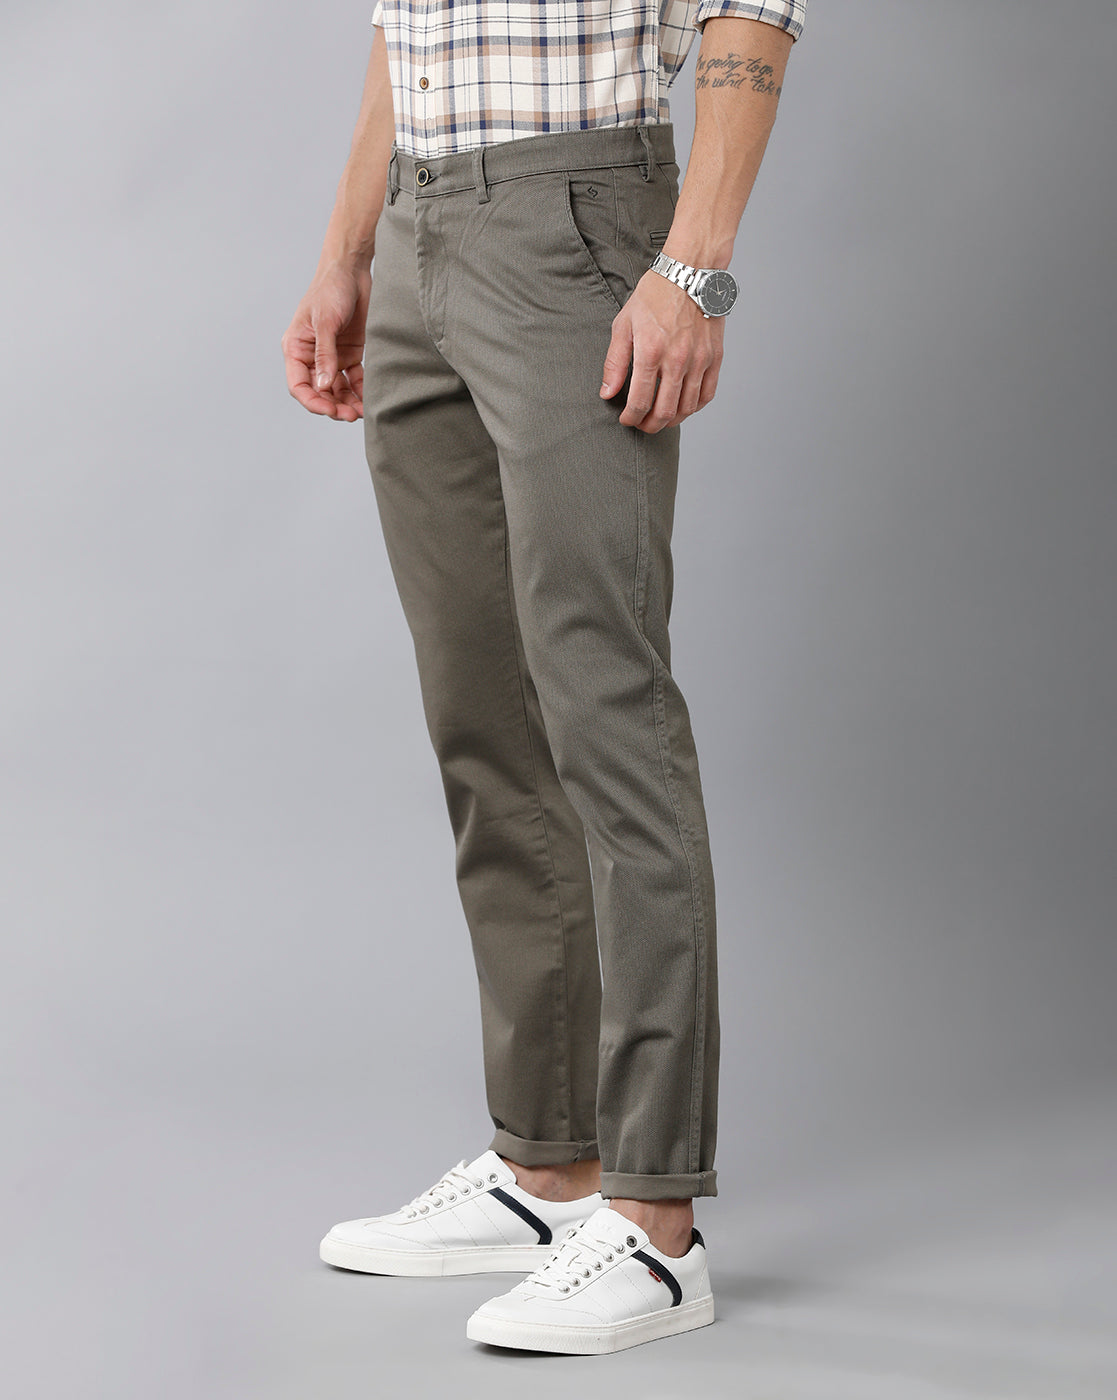 Buy Grey Trousers  Pants for Men by Rodamo Online  Ajiocom